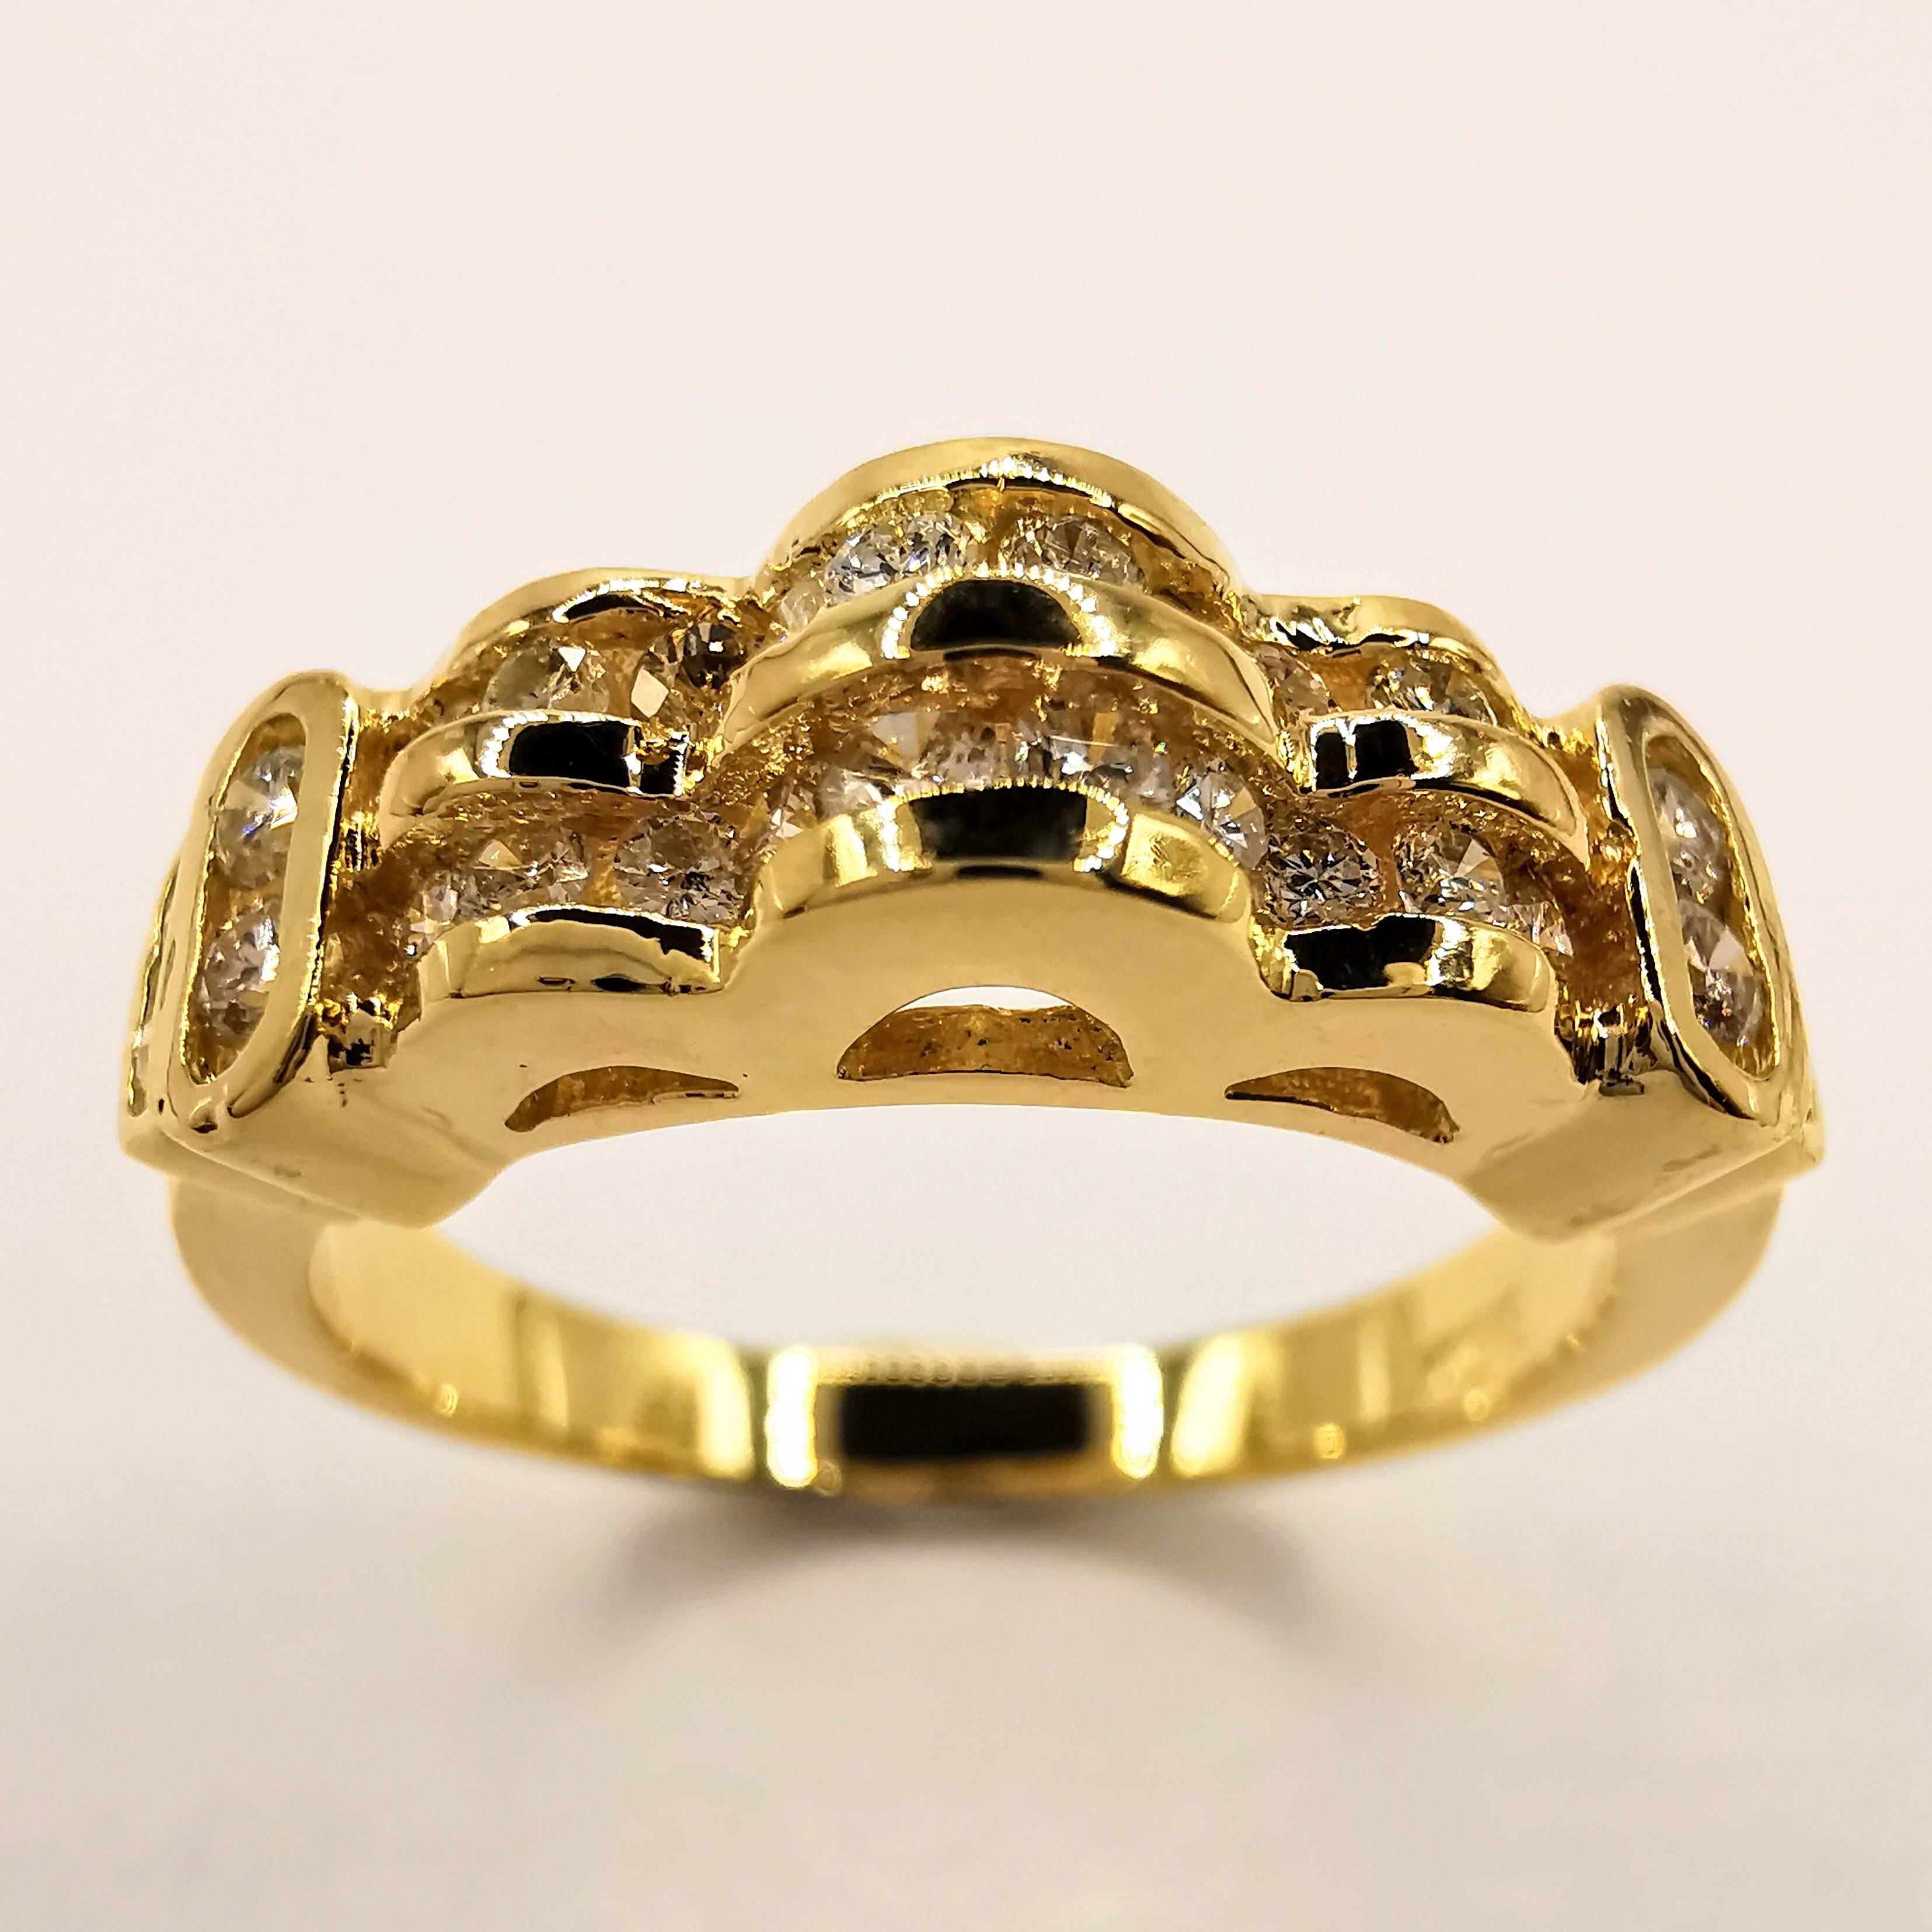 Dieser kühne und funkelnde, mit Diamanten besetzte Braut-/Hochzeits-/Unisex-Ring ist aus 850er Gelbgold gefertigt, das einen Feingehalt von etwas über 20 Karat aufweist. Der Ring ist mit 28 Diamanten im Brillantschliff von insgesamt 0,52 Karat